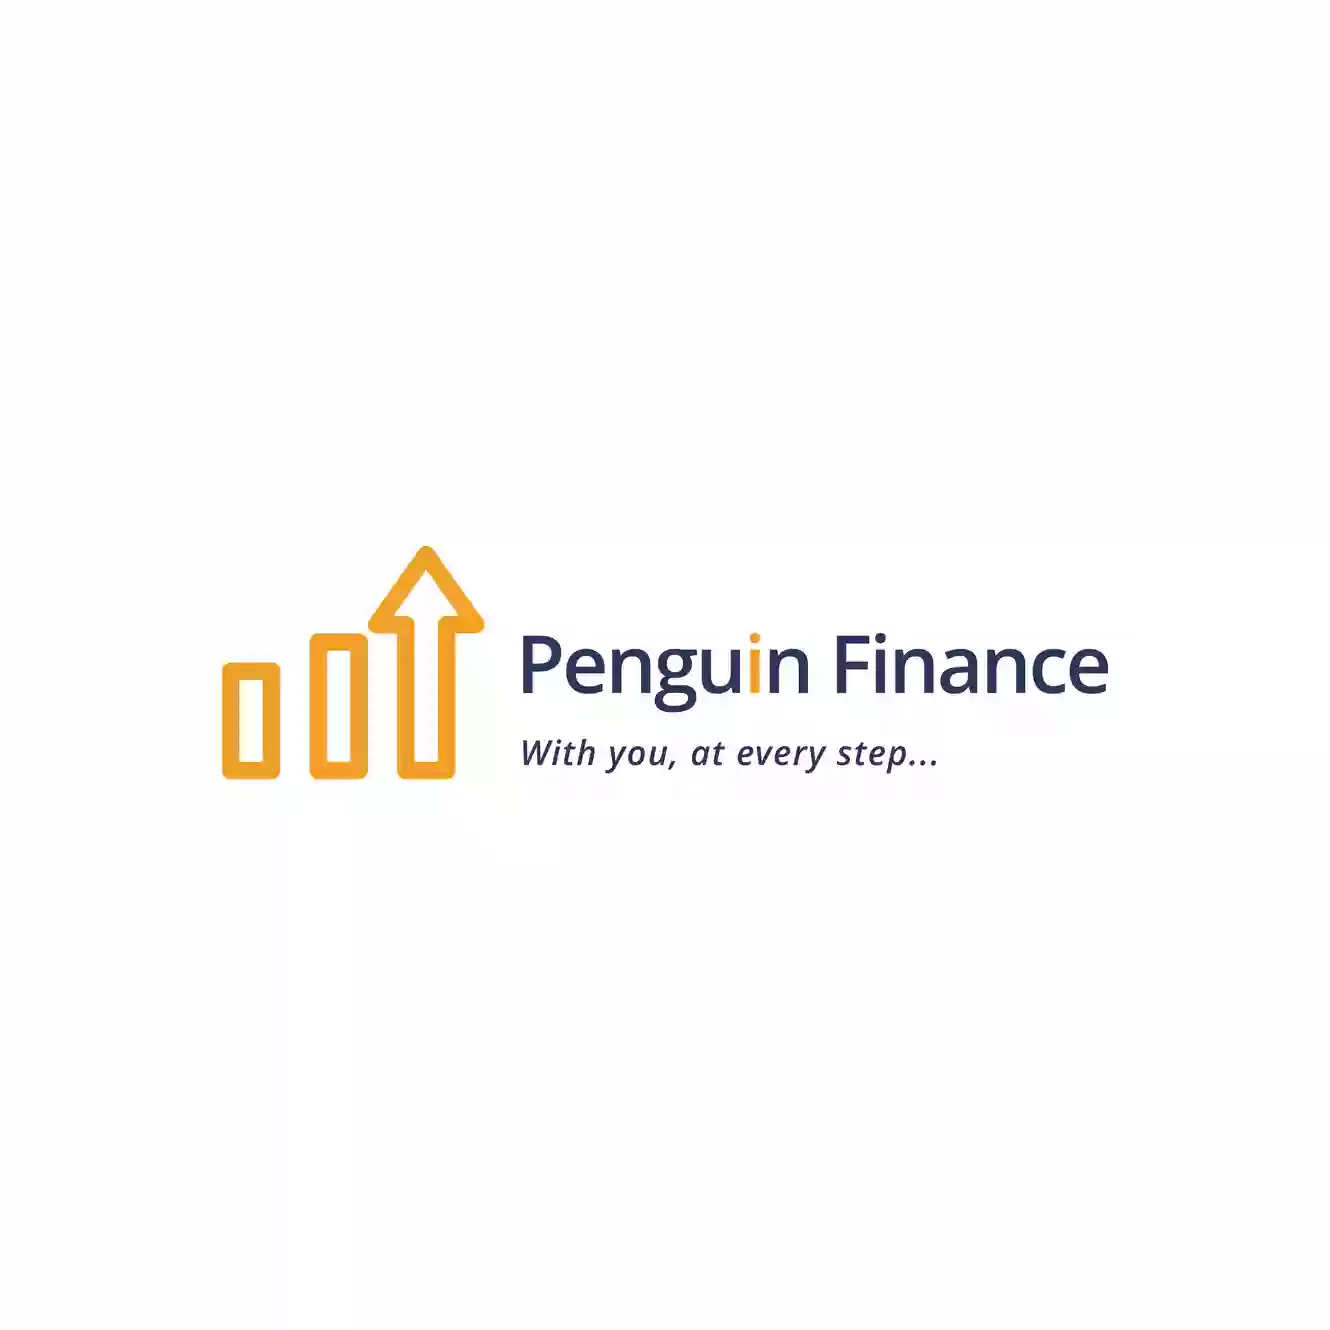 Penguin Financial Services Ltd